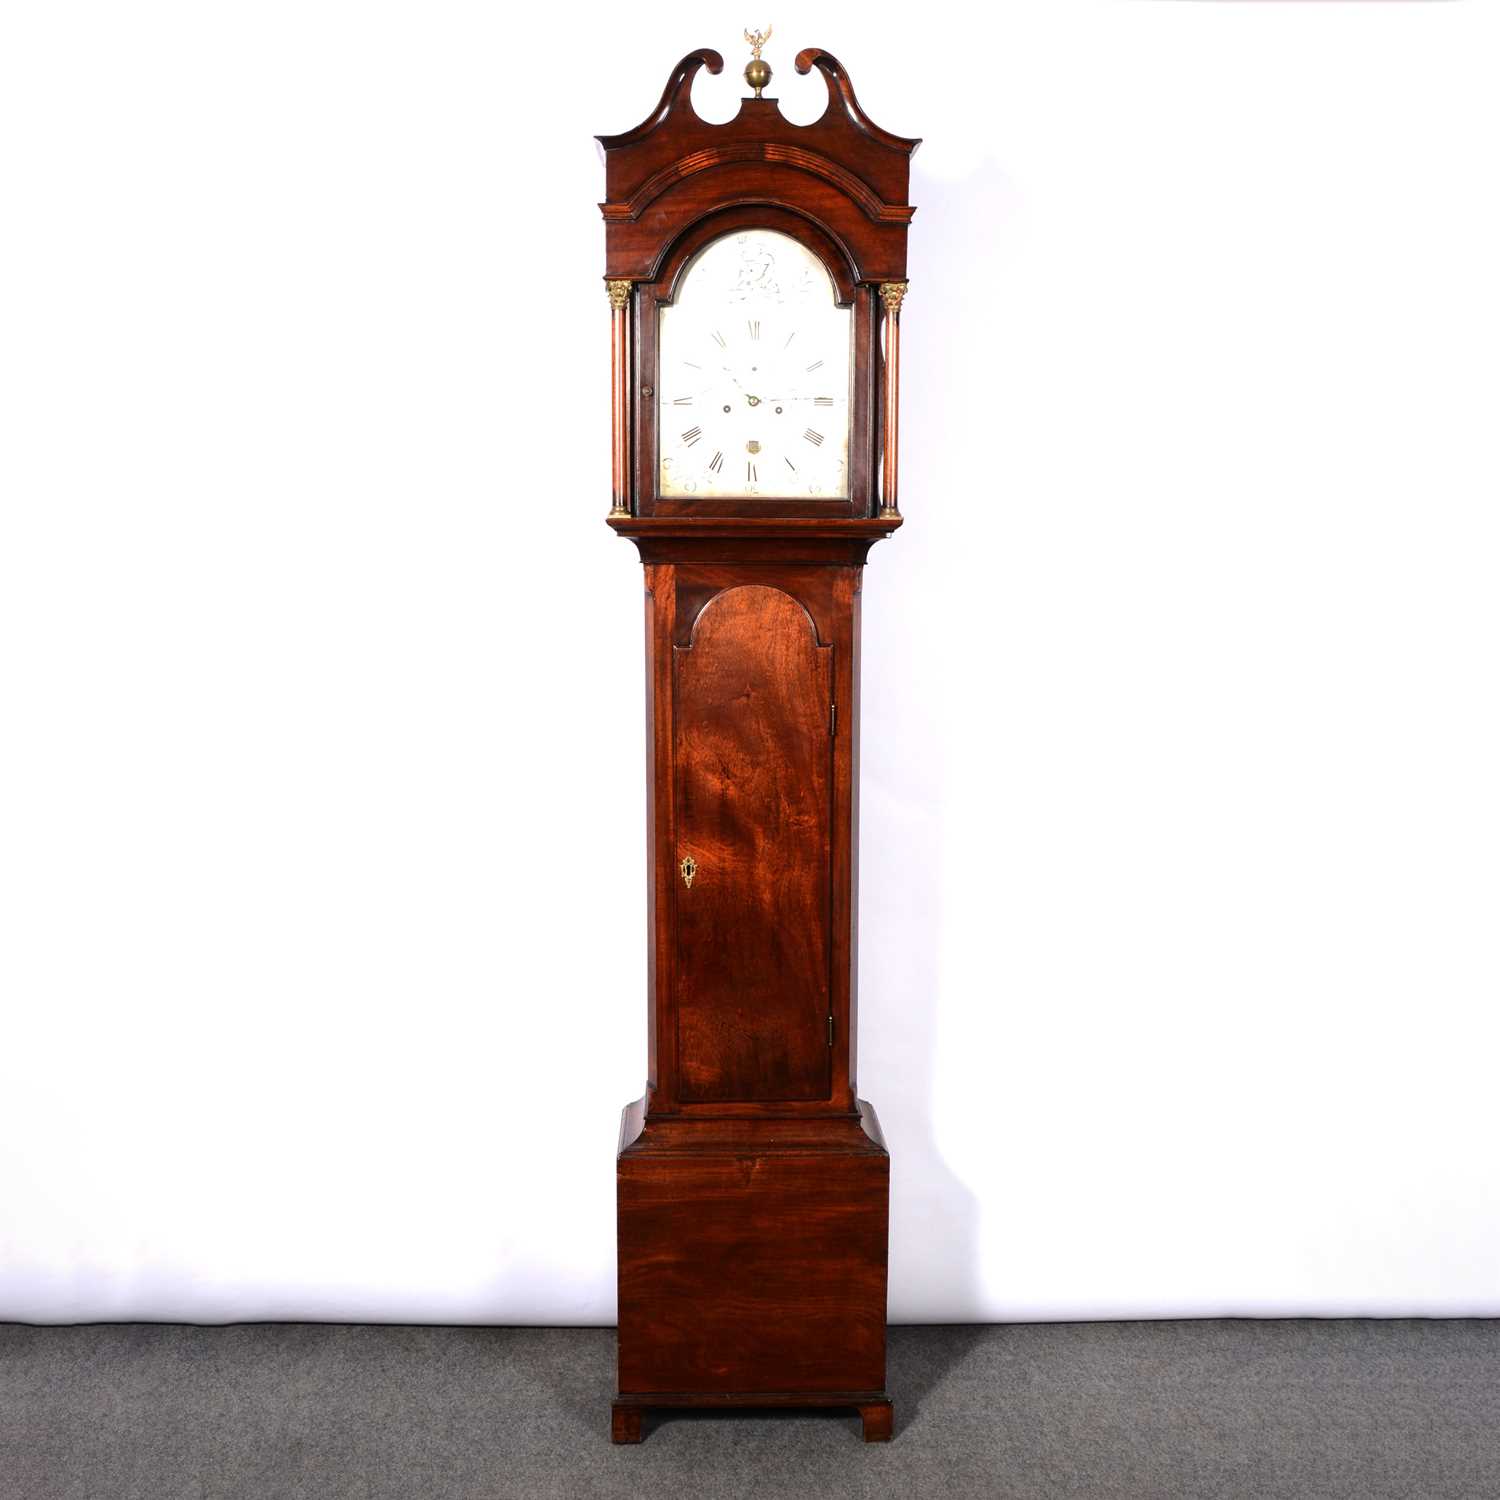 Mahogany longcase clock, Thomas Field, Bath,